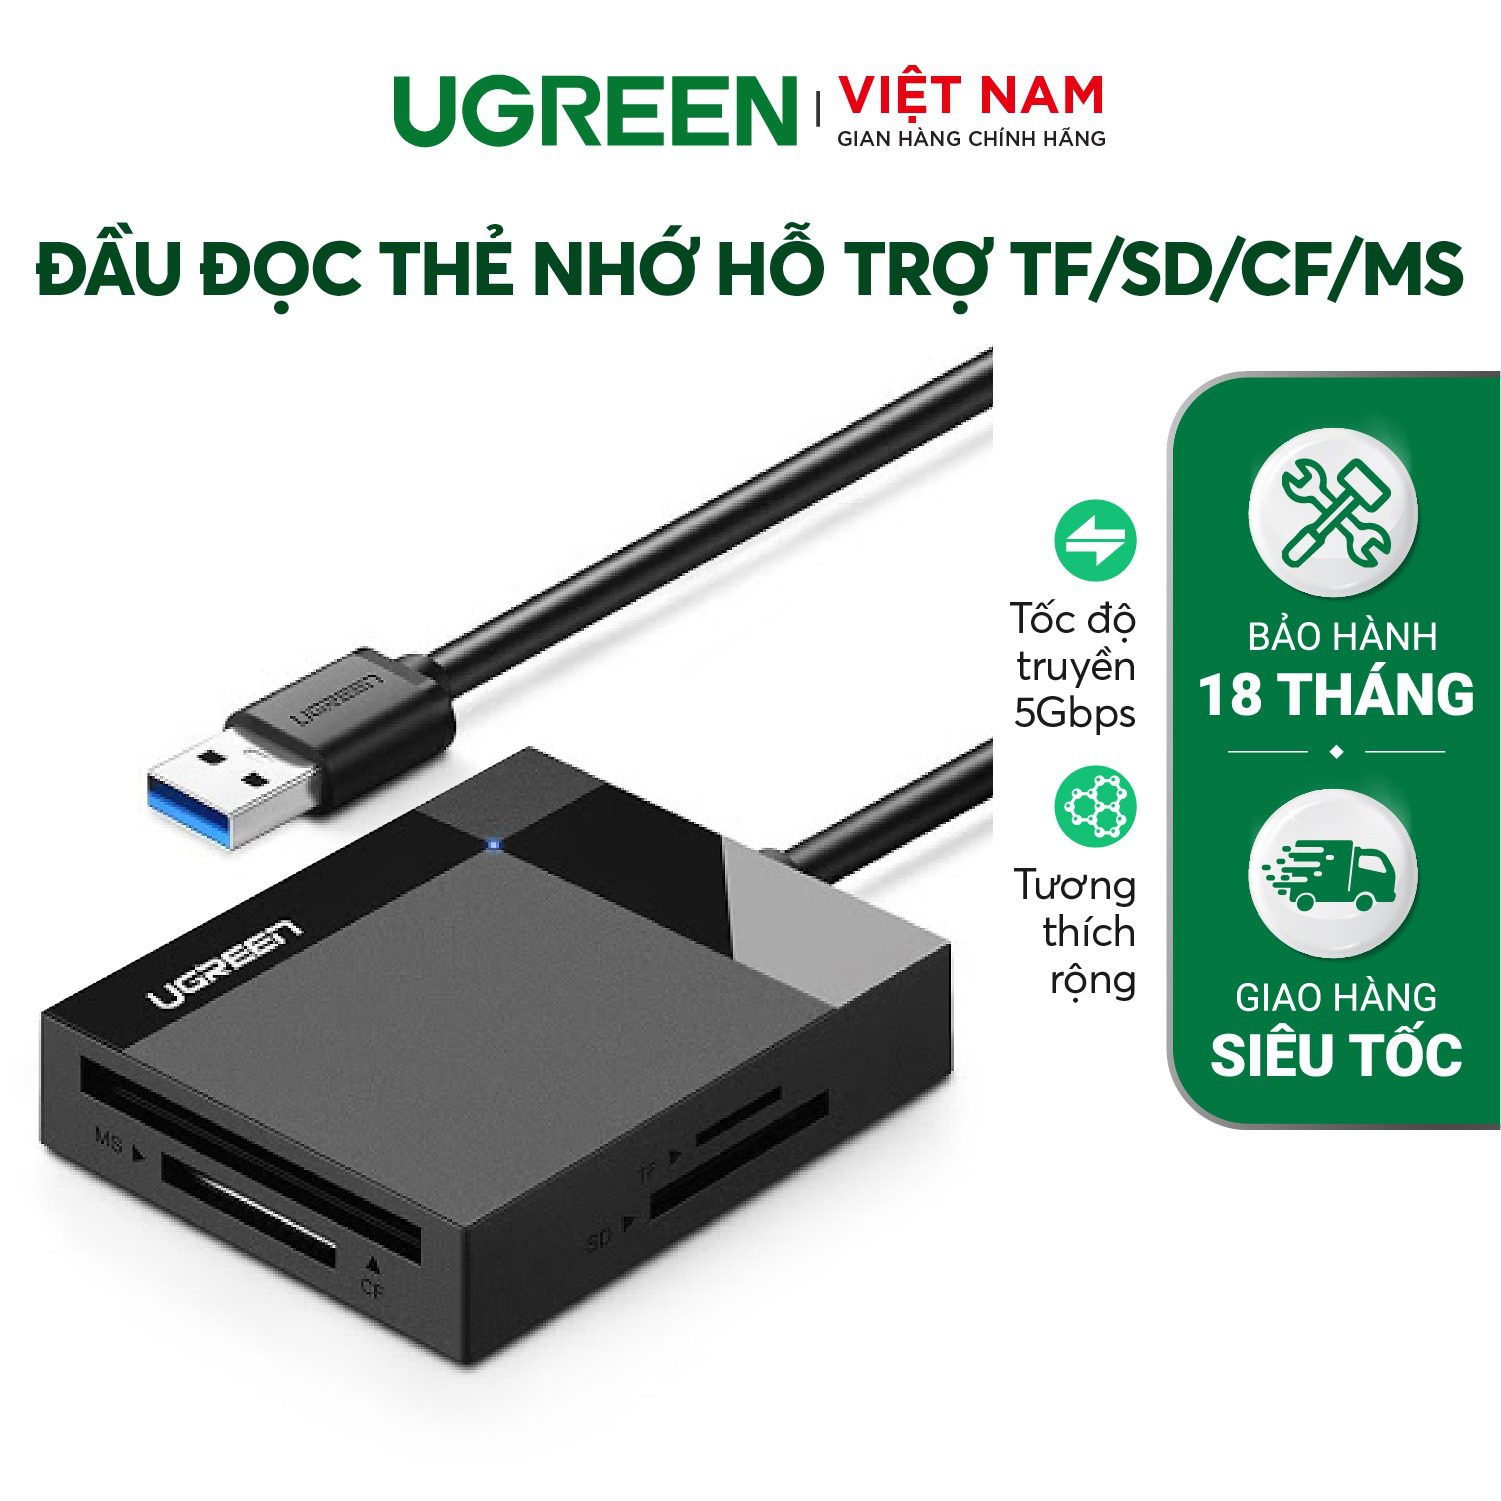 Đầu đọc thẻ Ugreen USB3.0 UGREEN 30231 Hỗ trợ thẻ TF/SD/CF/MS dài 1m – Ugreen Việt Nam